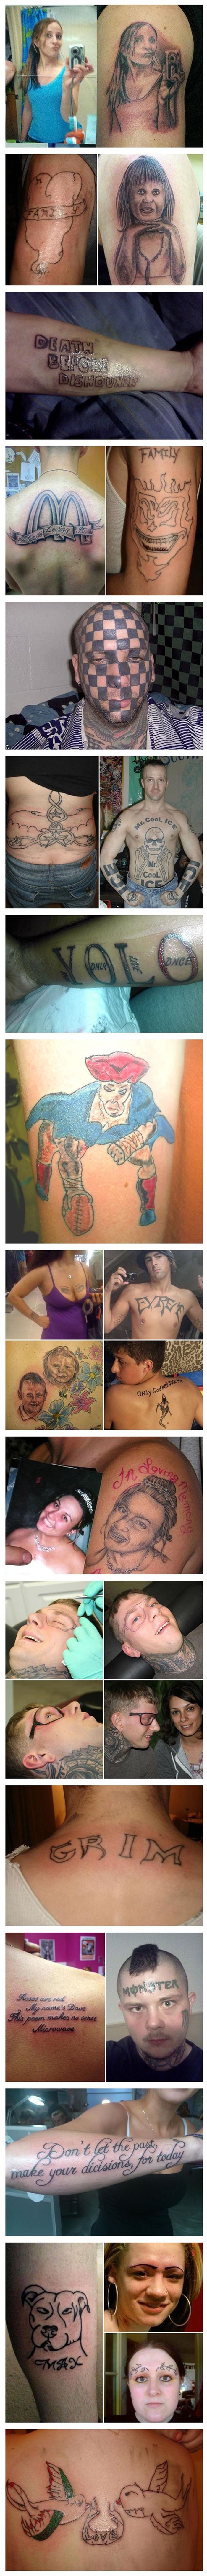 Galerija najgorih tetovaža nasmijat će vas i zgroziti u isto vrijeme